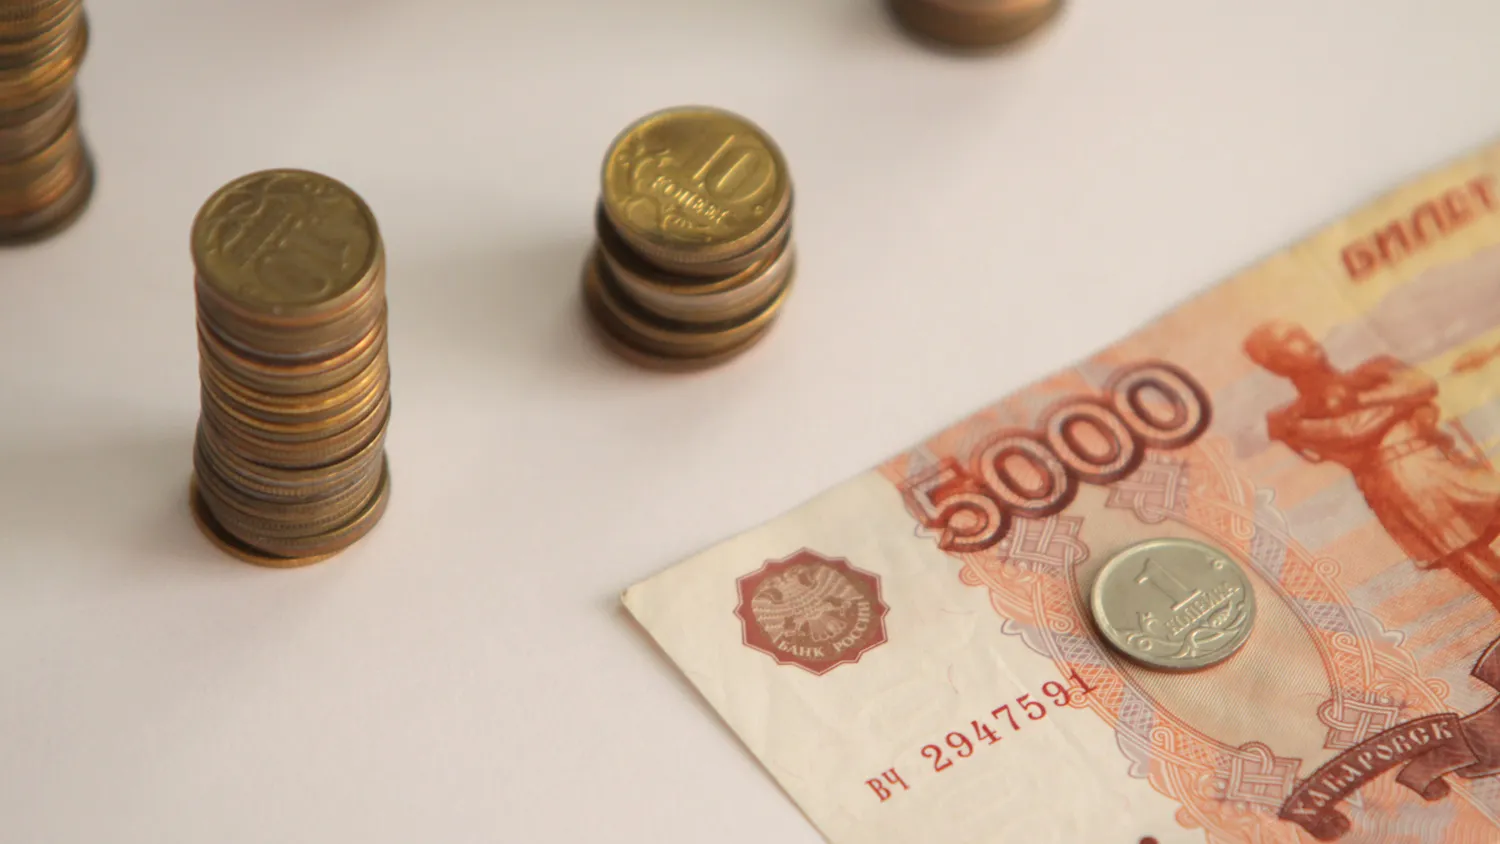 Хищения до 5 тыс. рублей повлекут лишь административную ответственность